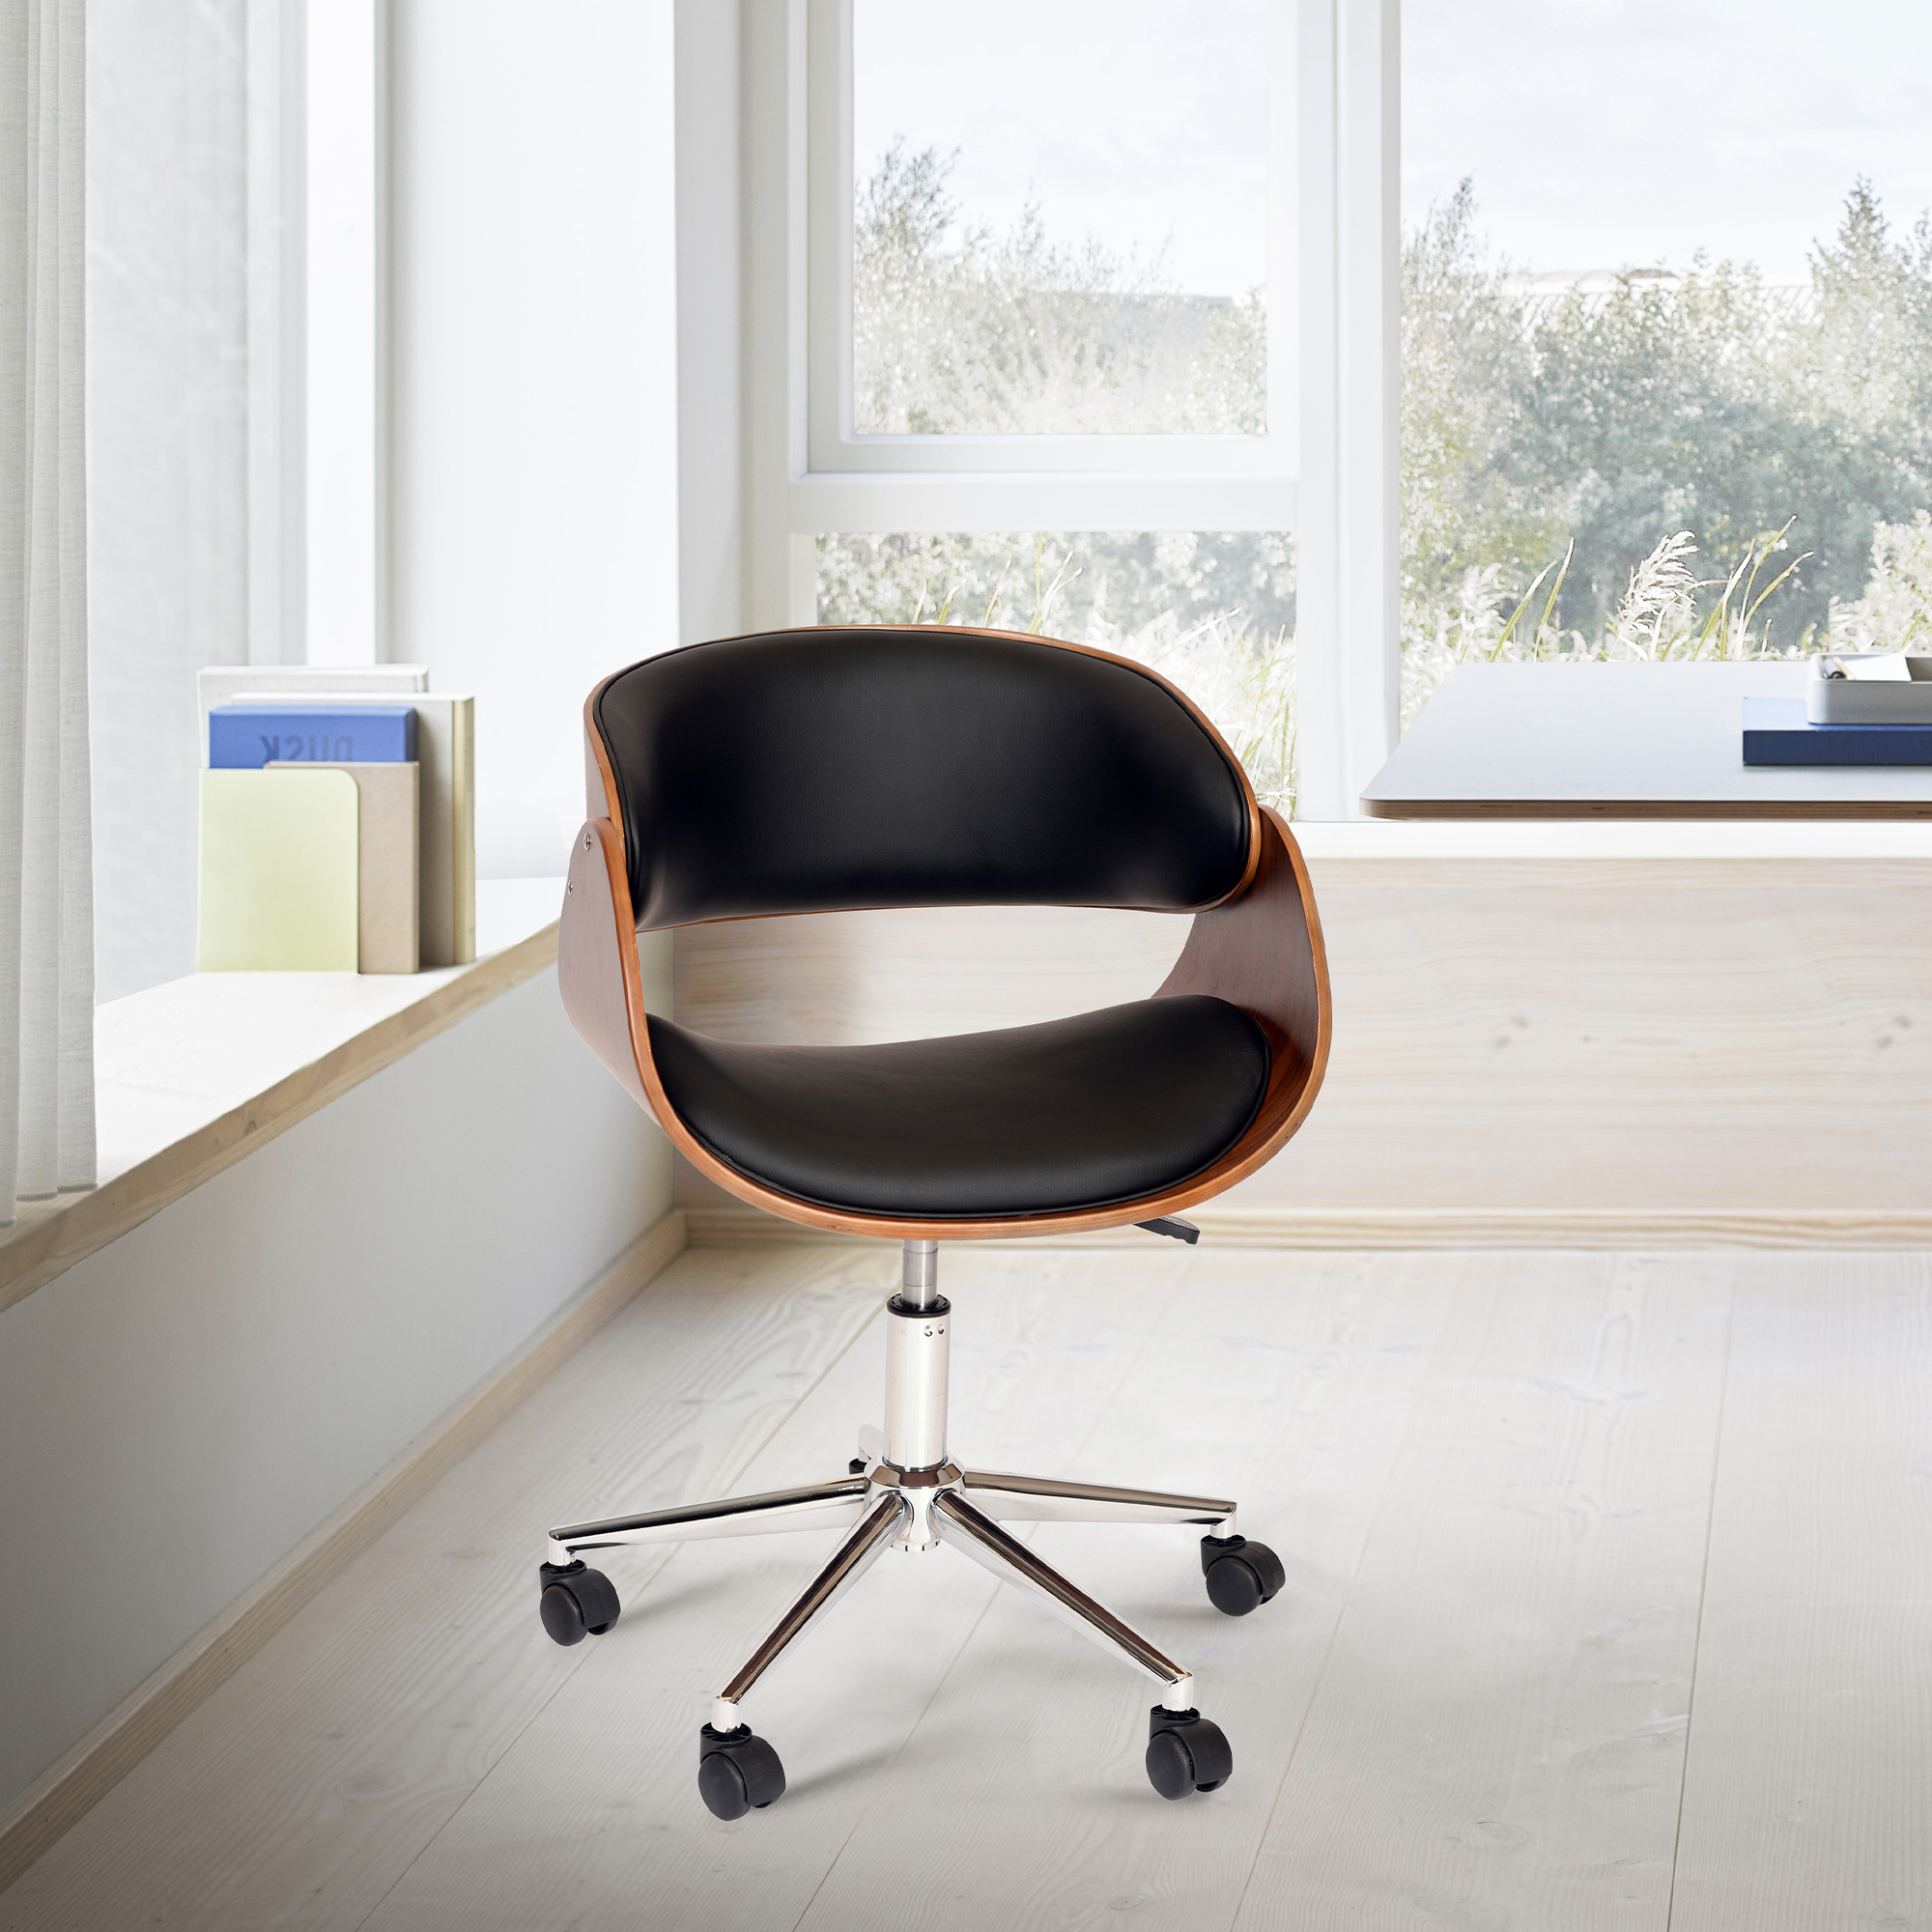 Julian Modern Chair In Black And Walnut Veneer Back And Chrome